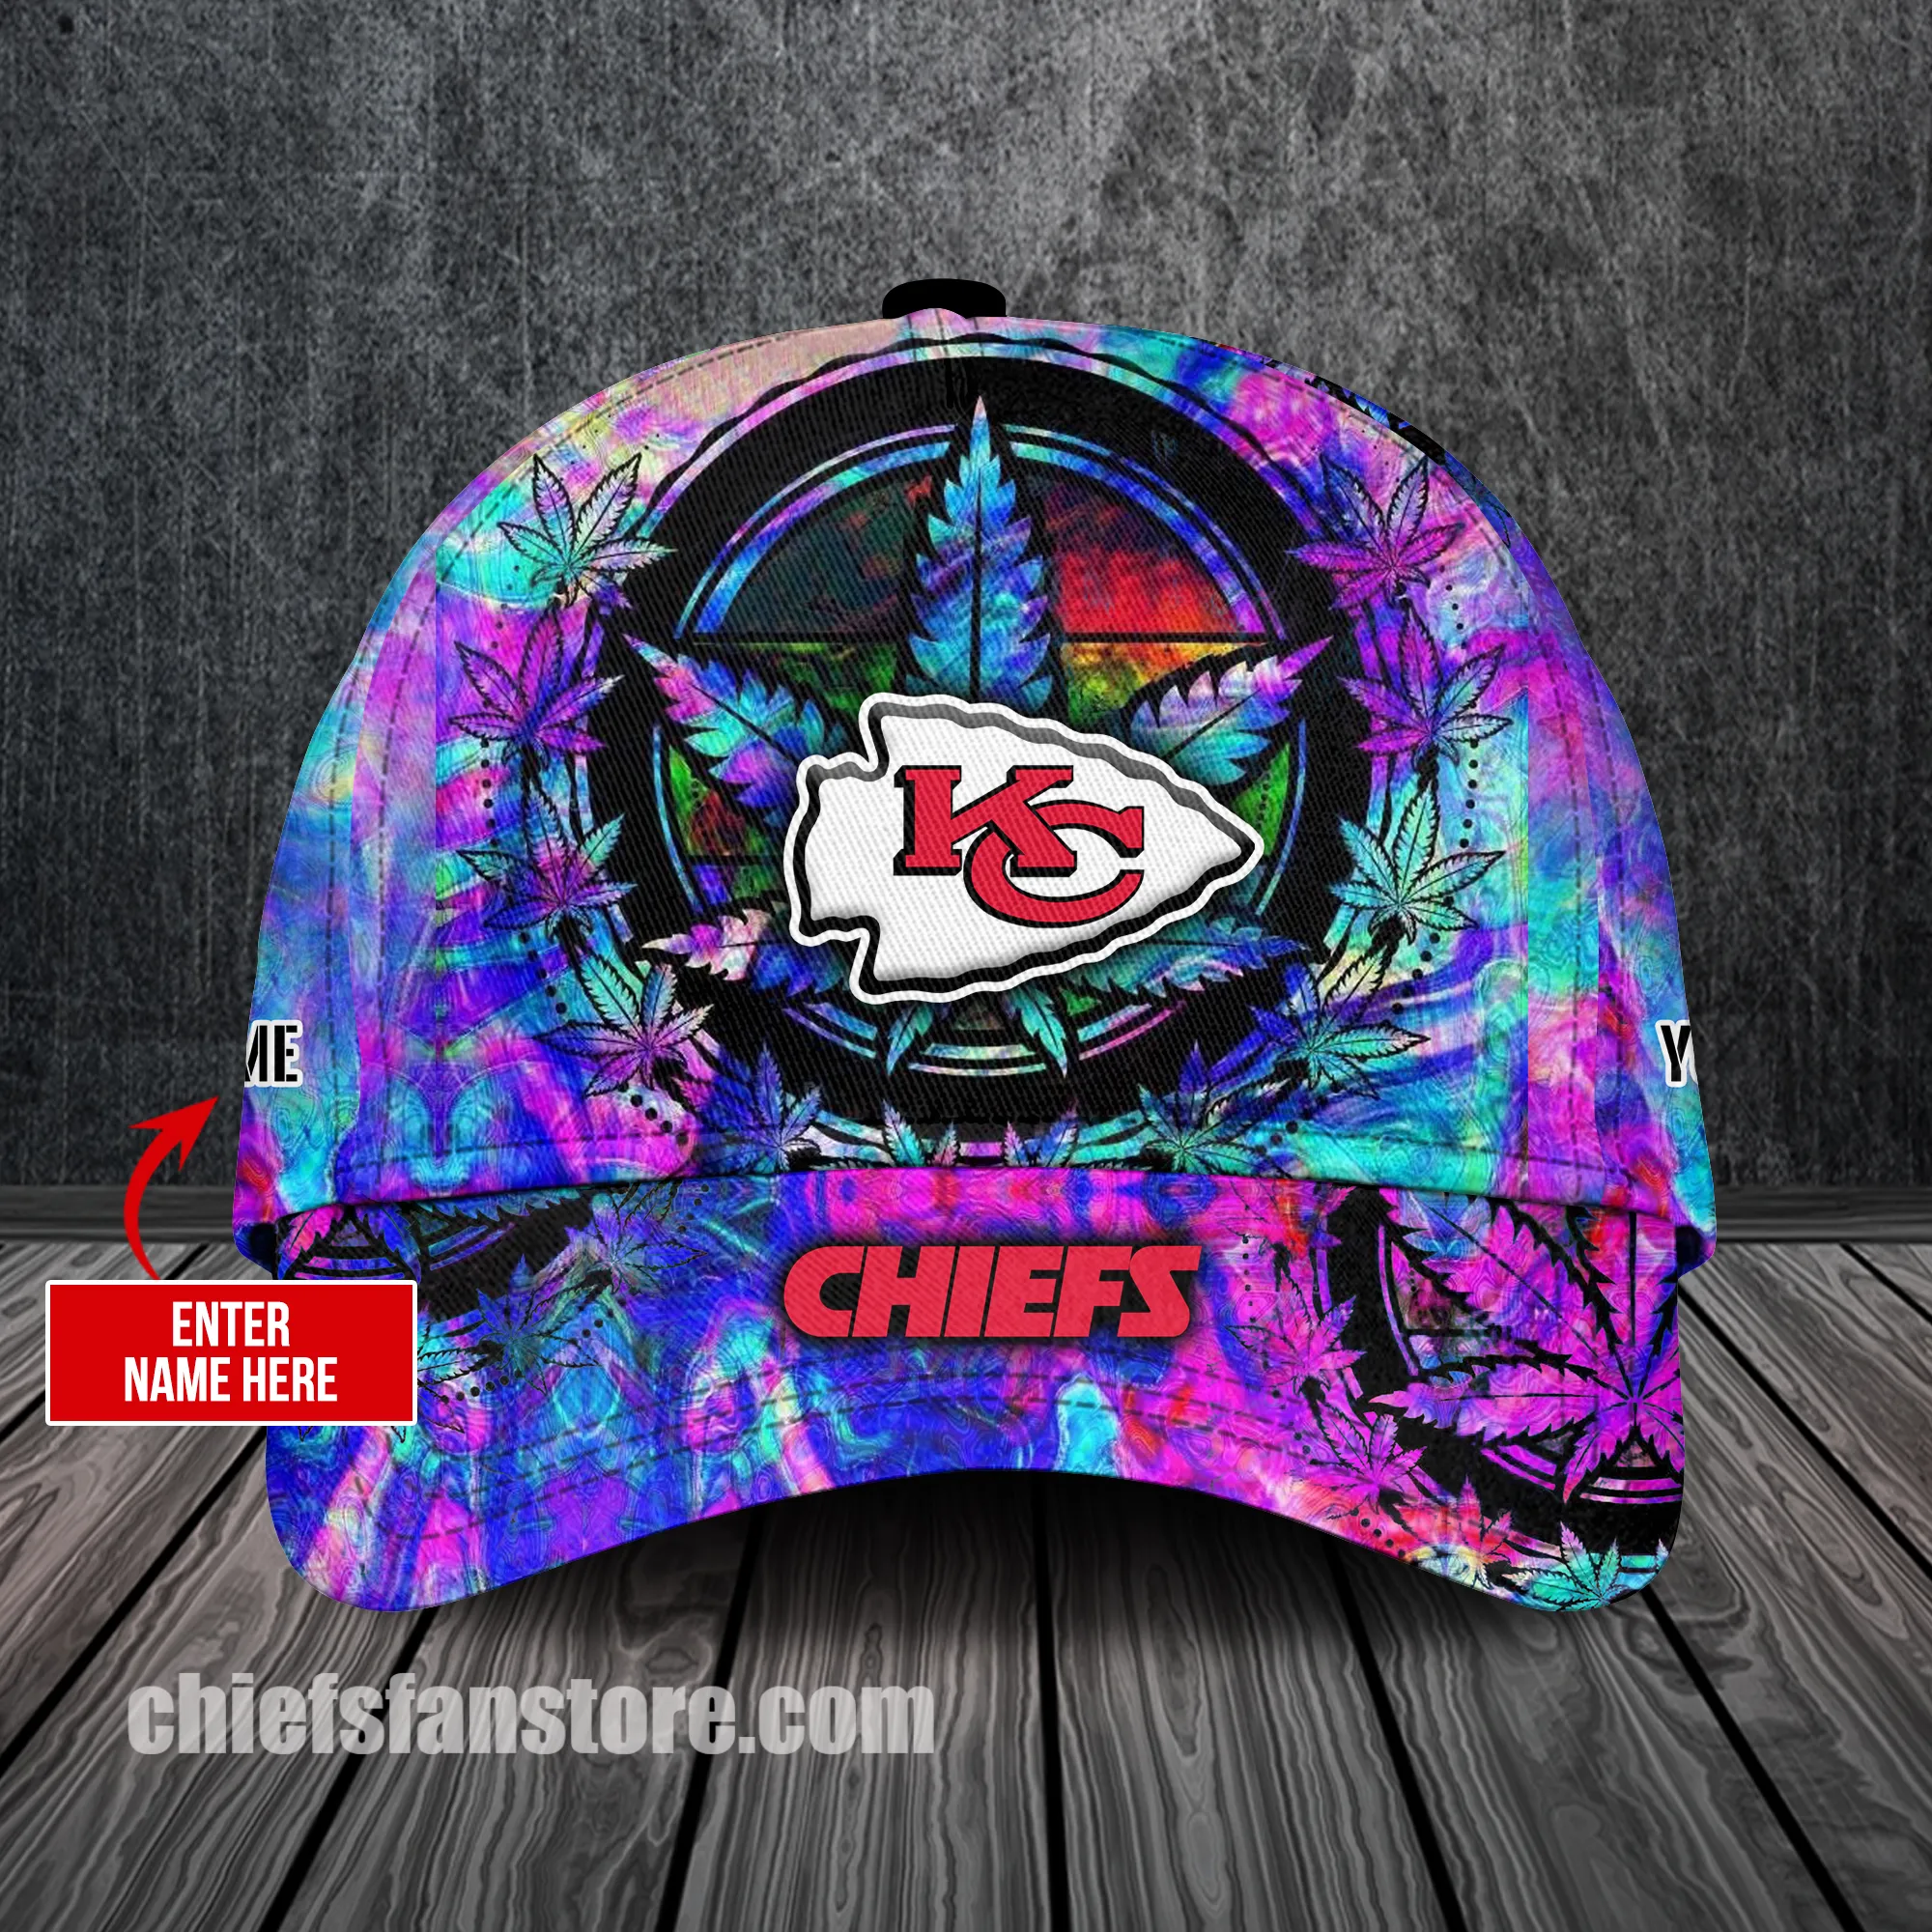 kc chiefs hat